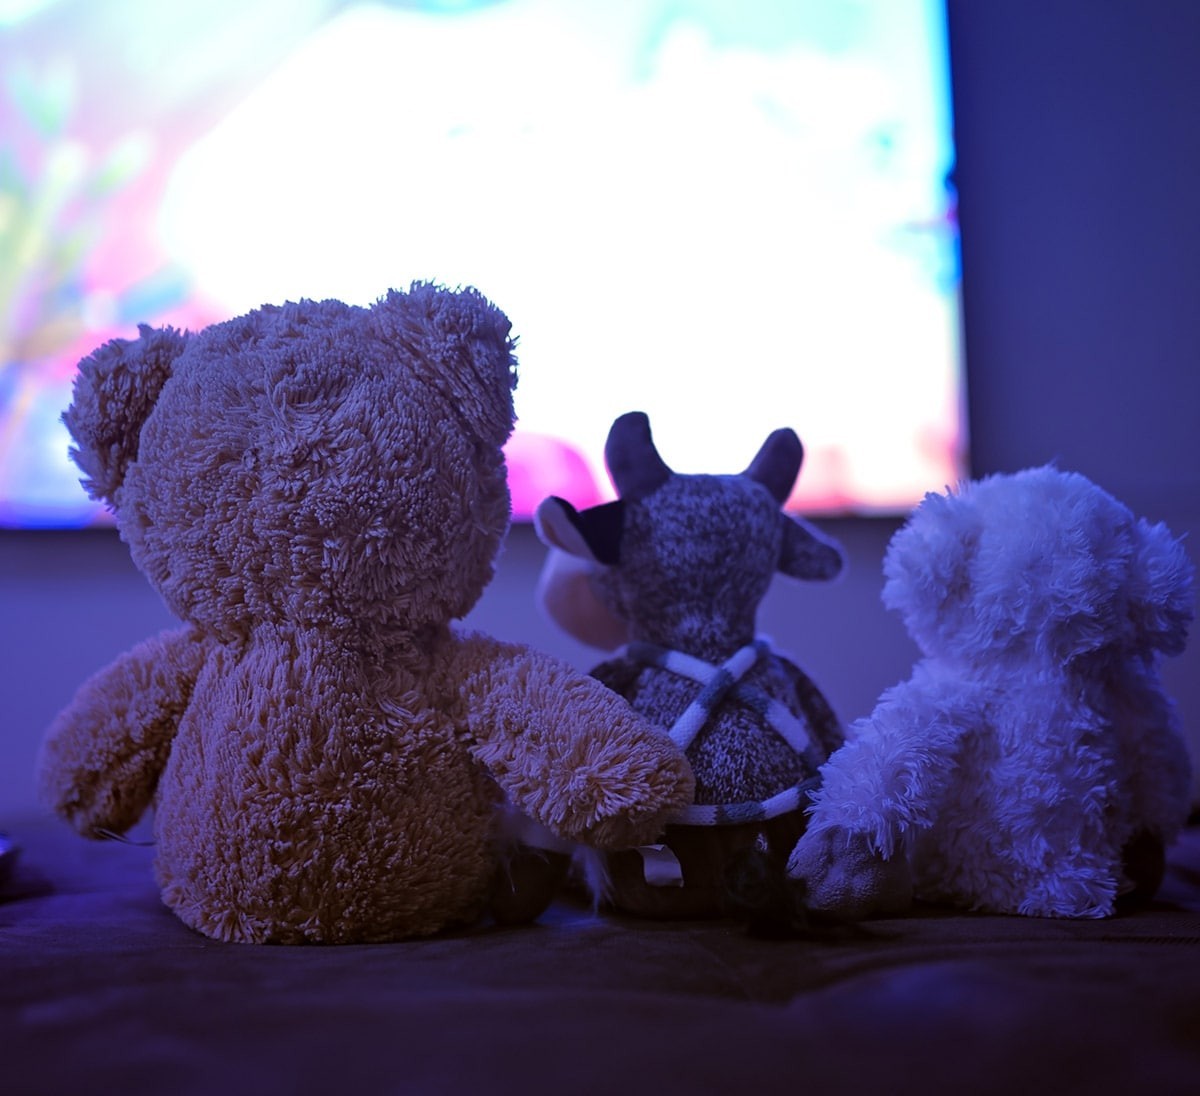 Blog Bambiboo - Rodzinne seanse z platformami streamingowymi - wybór tytułów dla małych dzieci